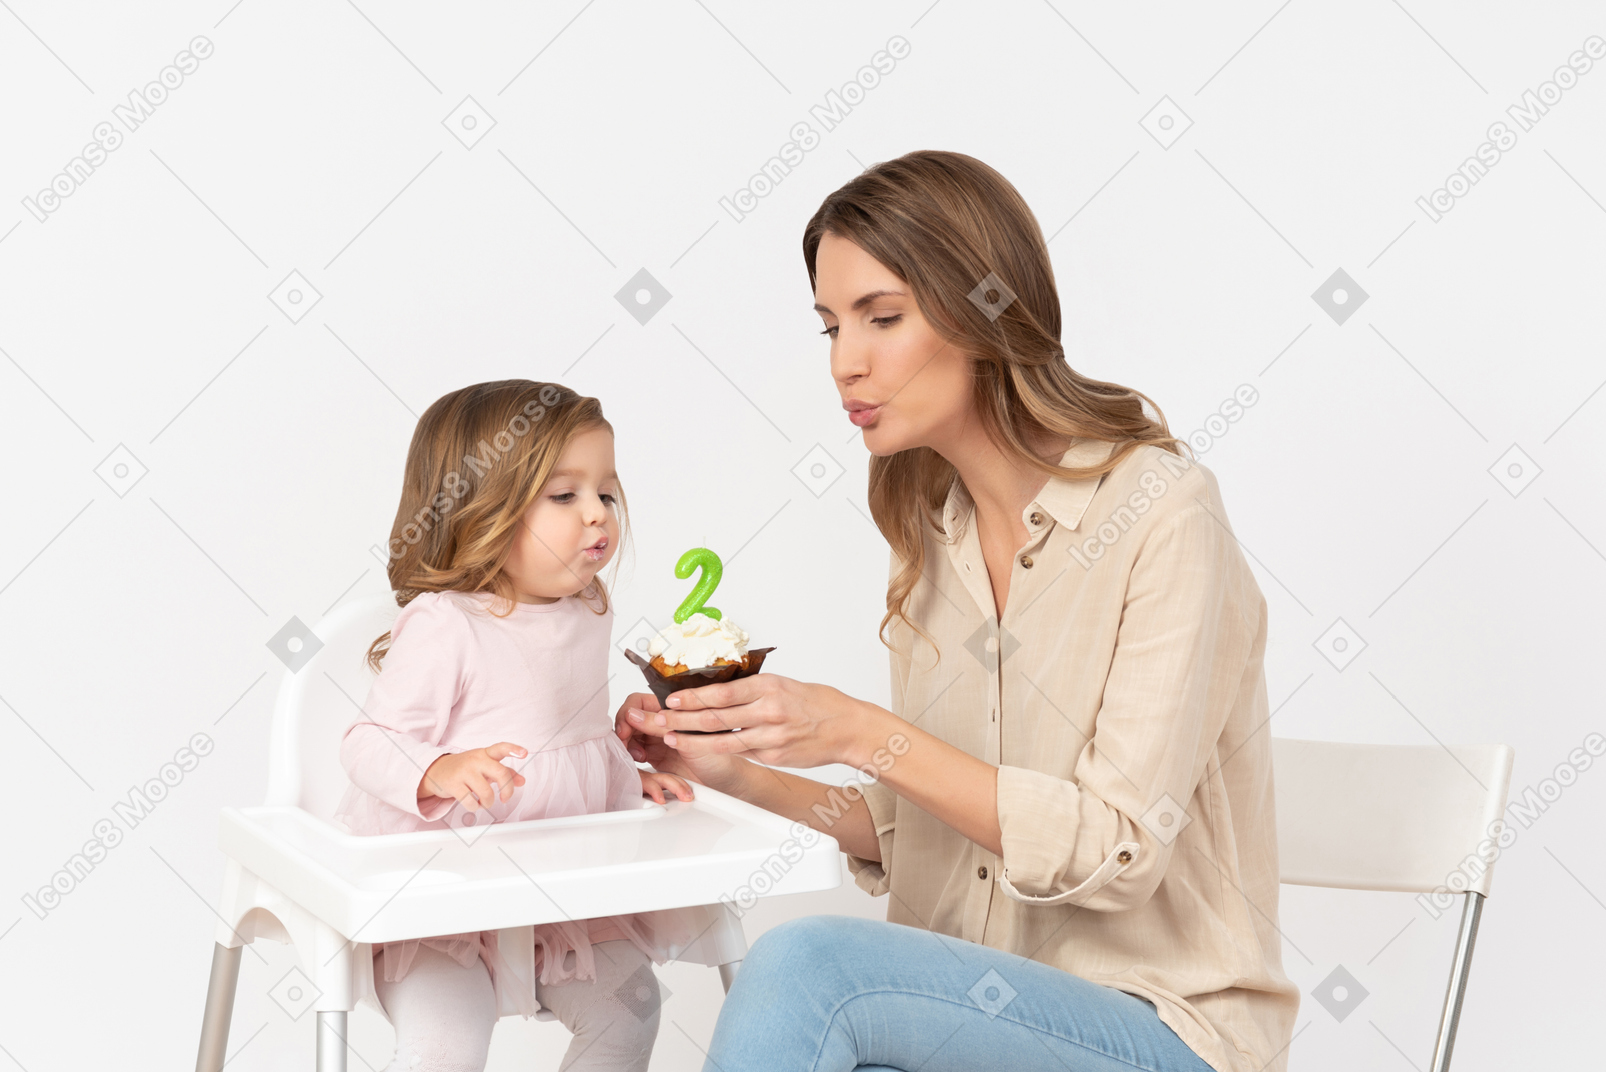 Девочка сдувает свечу, а ее мать держит торт ко дню рождения